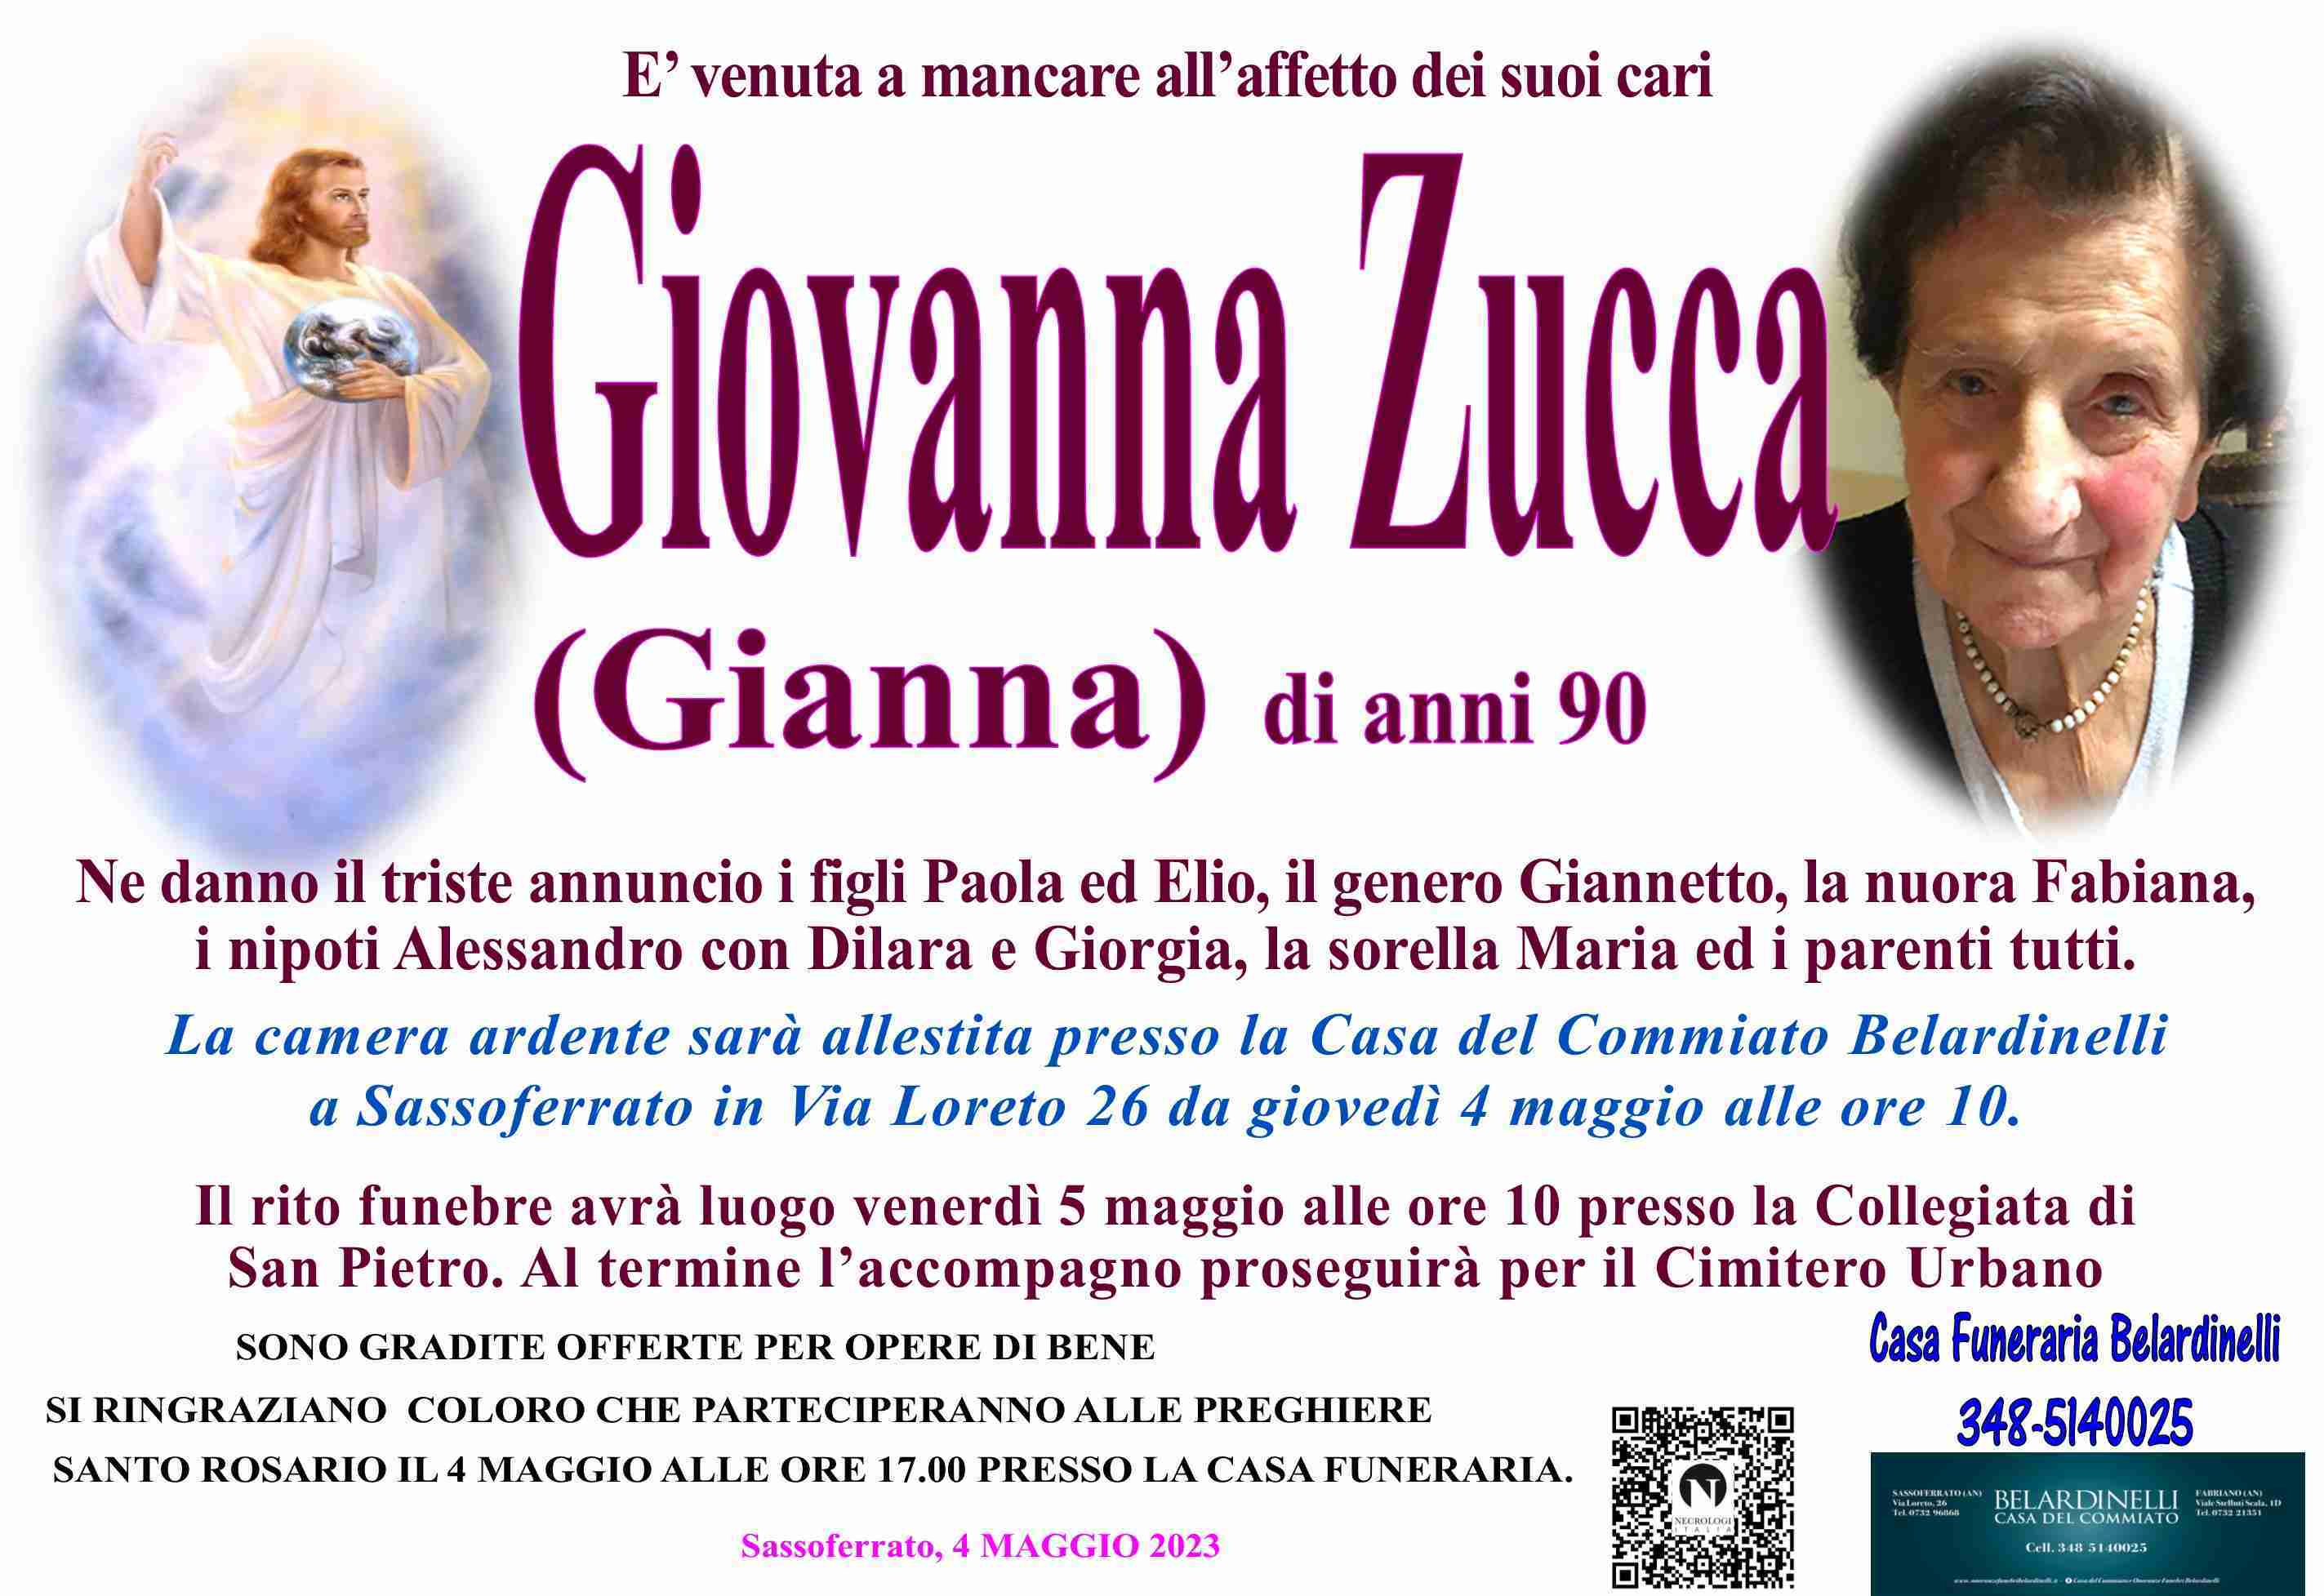 Giovanna Zucca